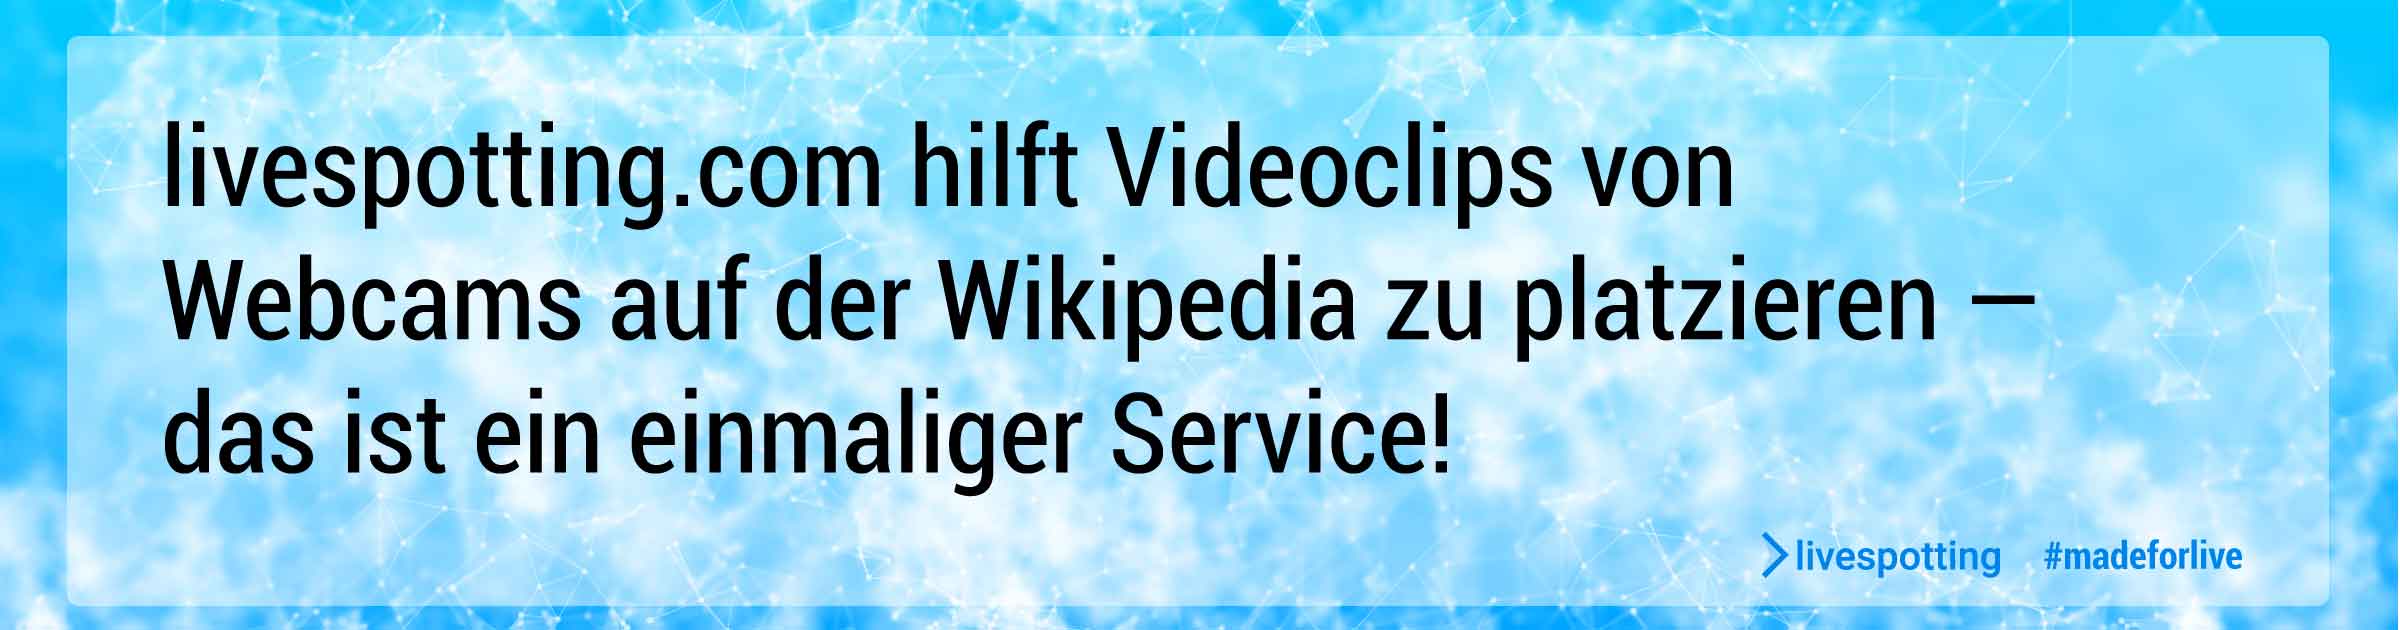 livespotting hilft als einziger Webcam Dienstleister für Videohosting Webcms auf der Wikipedia zu platzieren.